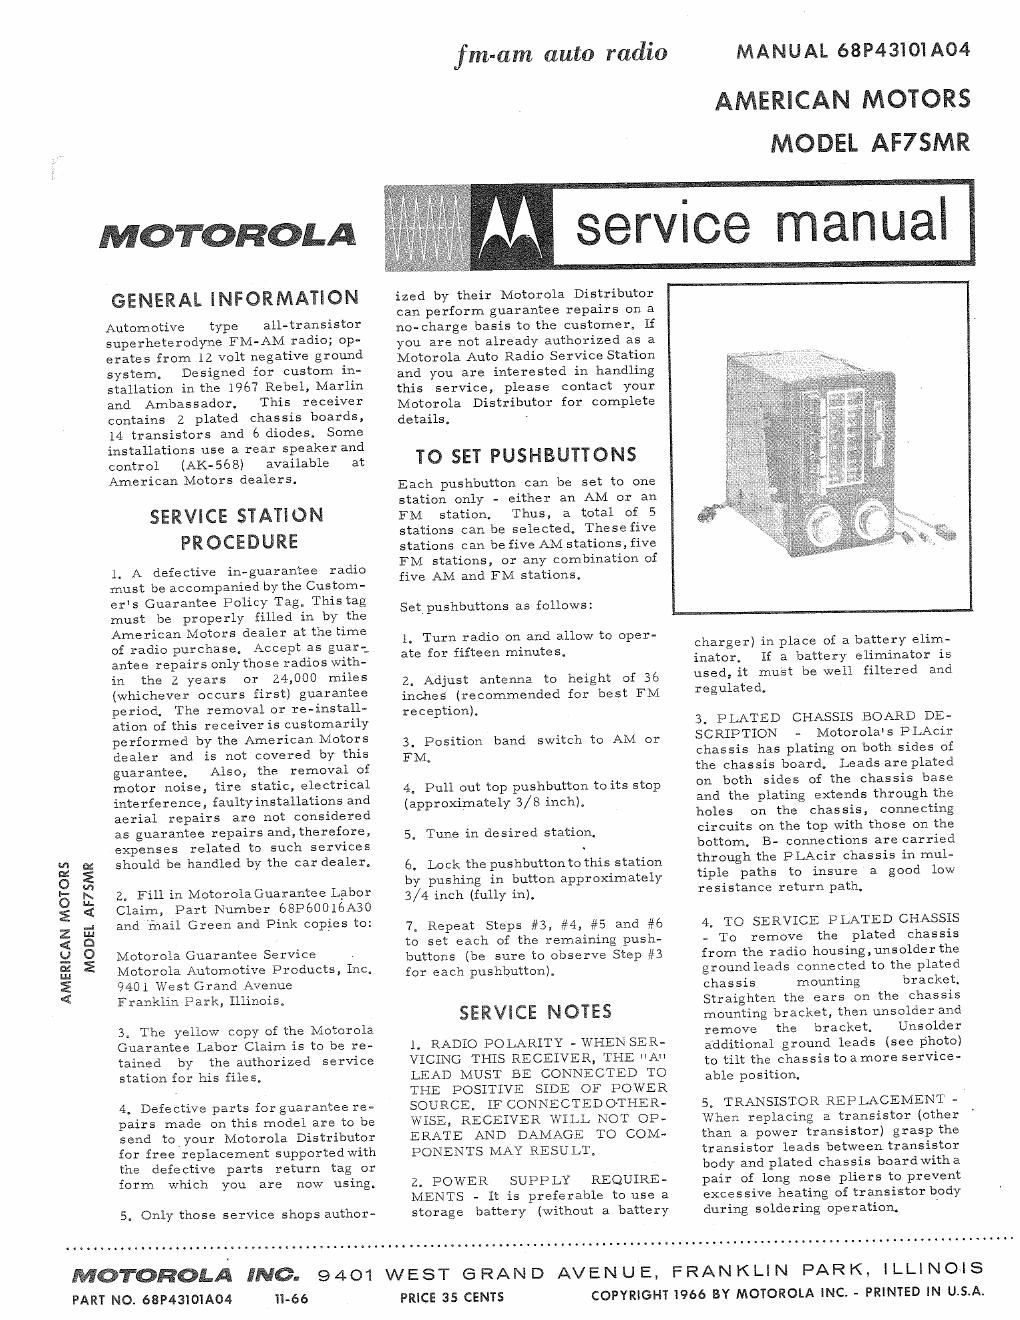 motorola af 7 smr service manual